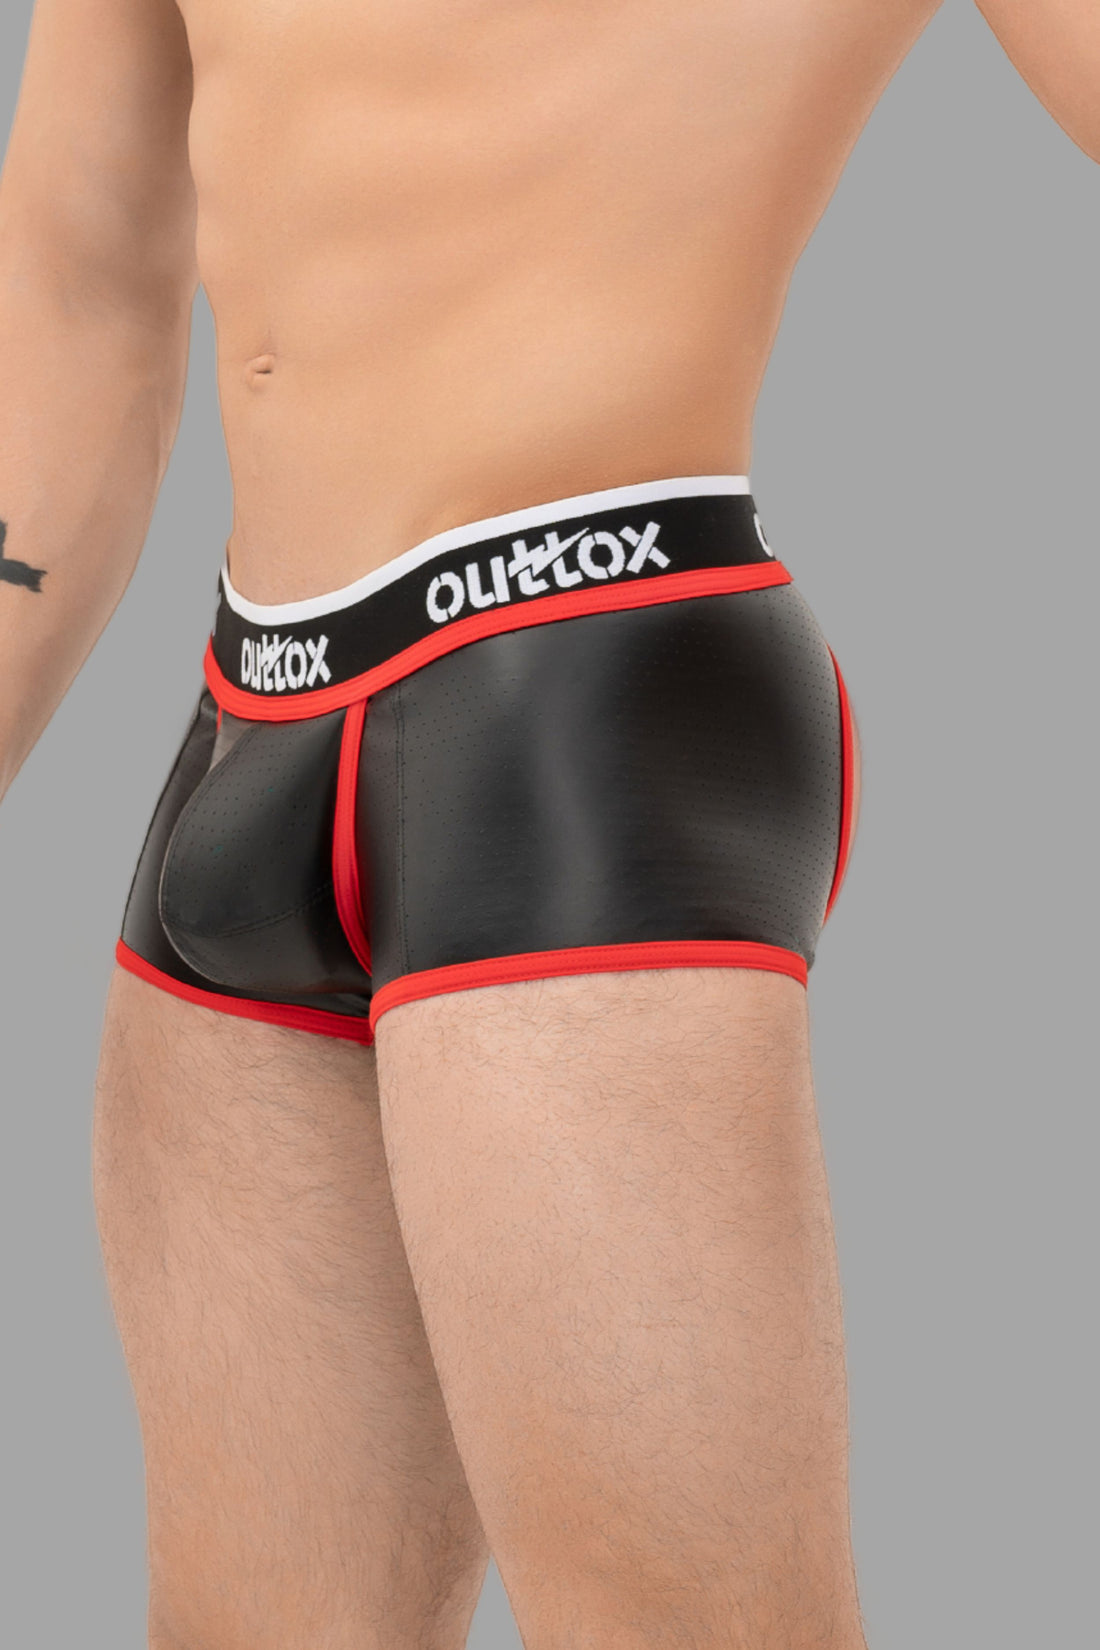 Outtox. Pantalones cortos con parte trasera abierta y bragueta a presión. Negro+rojo